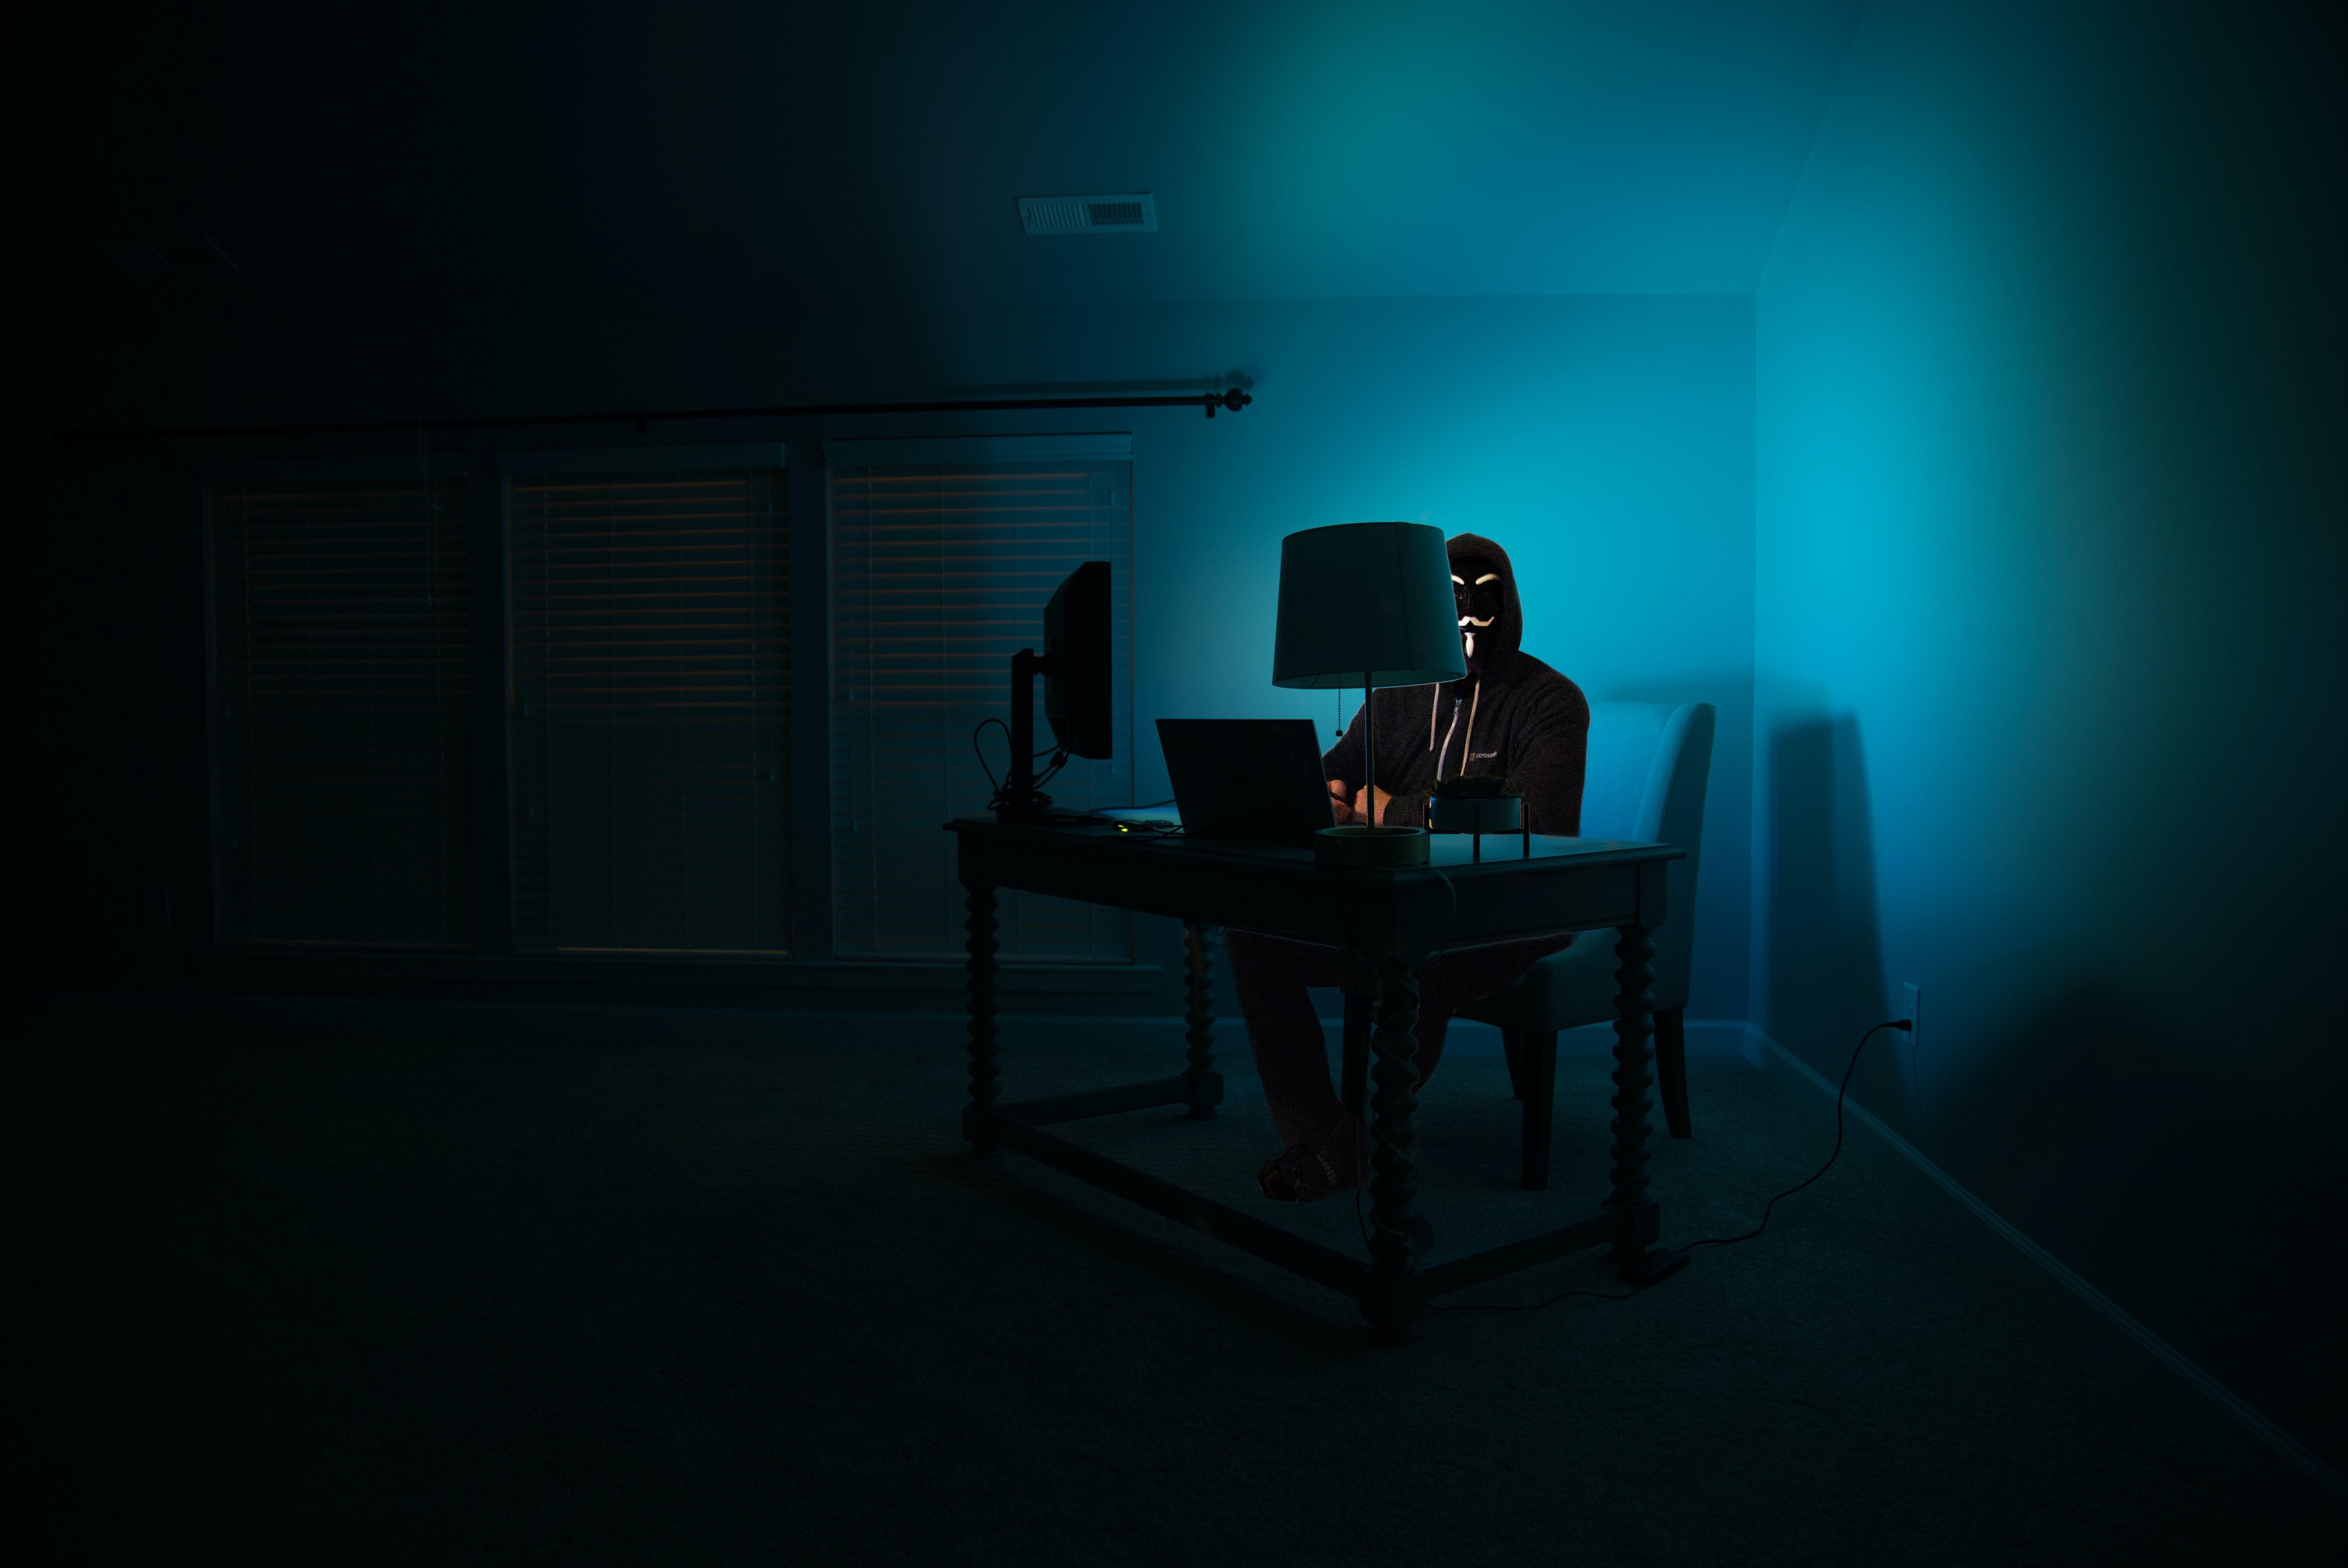 egy sötét szobában egy álarcos hacker ül egy számítógép előtt